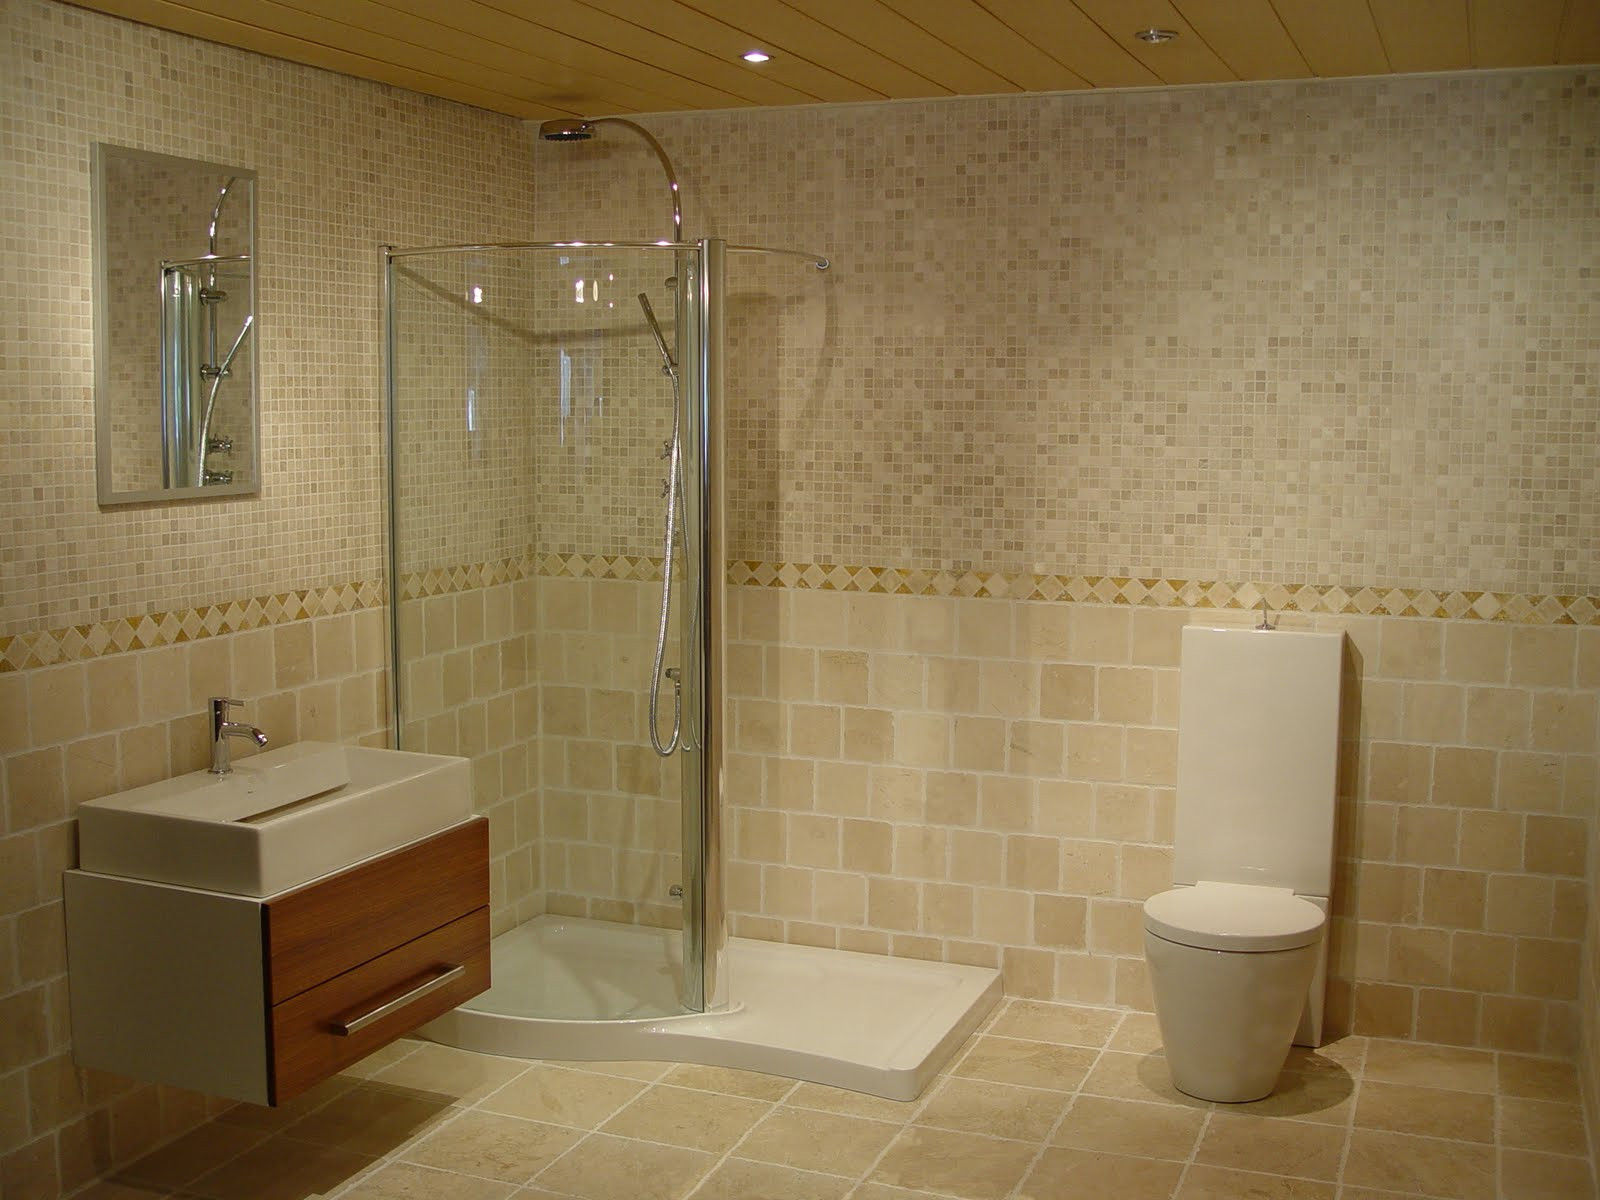 Bathroom Ideas With Tiles
 Art Wall Decor Bathroom Wall Tiles Ideas